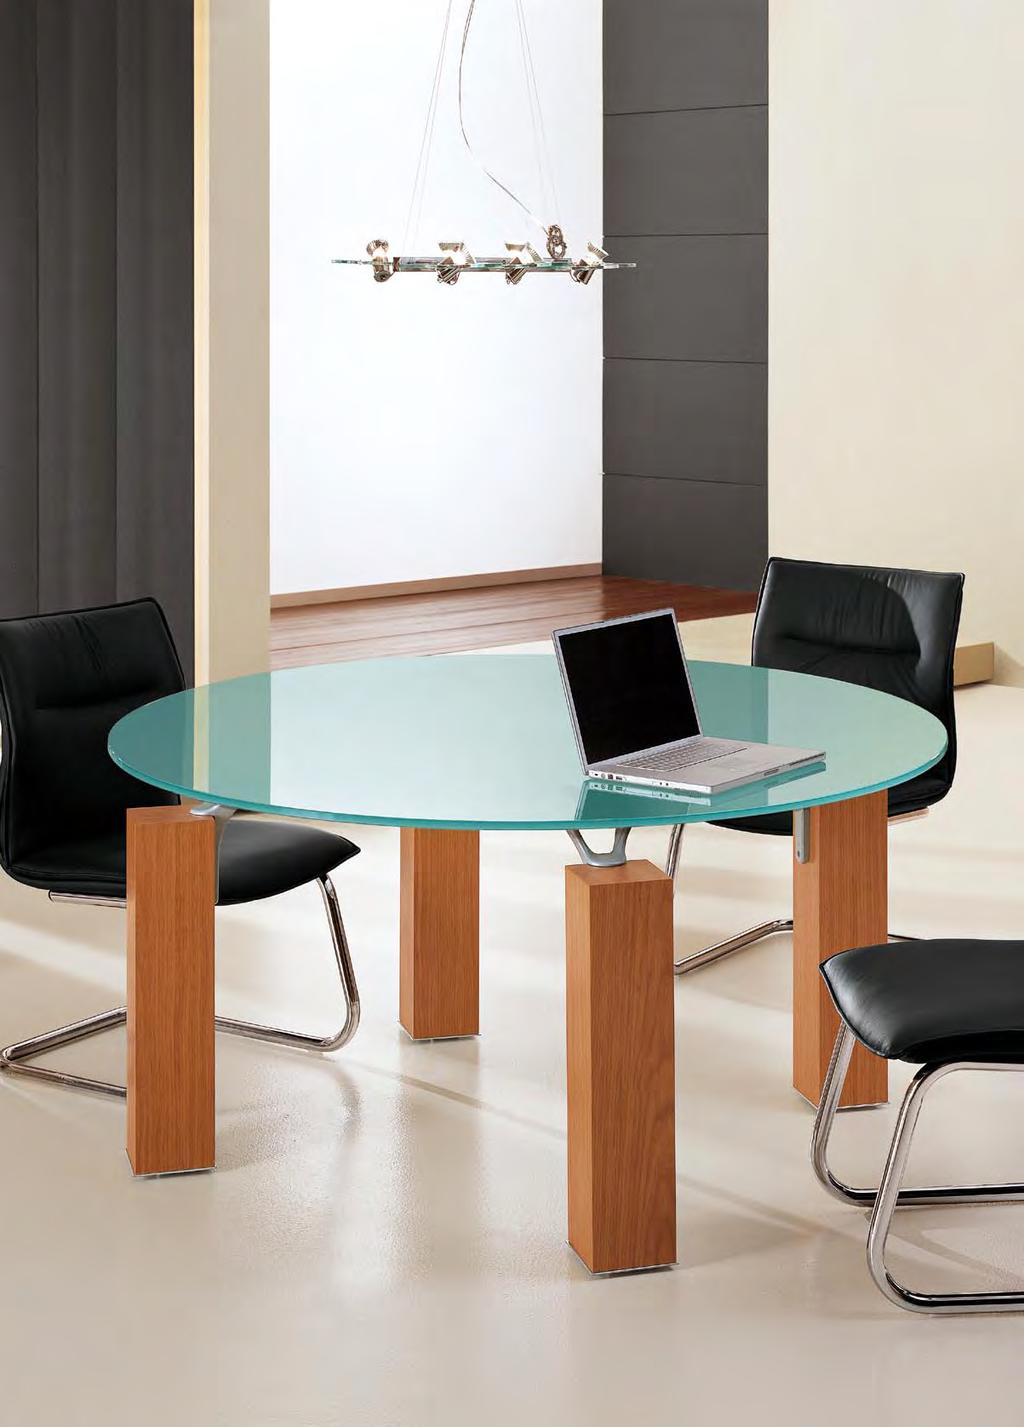 Oikos prevede una vasta gamma di tavoli riunione capaci di soddisfare ogni esigenza in modo versatile e dinamico.